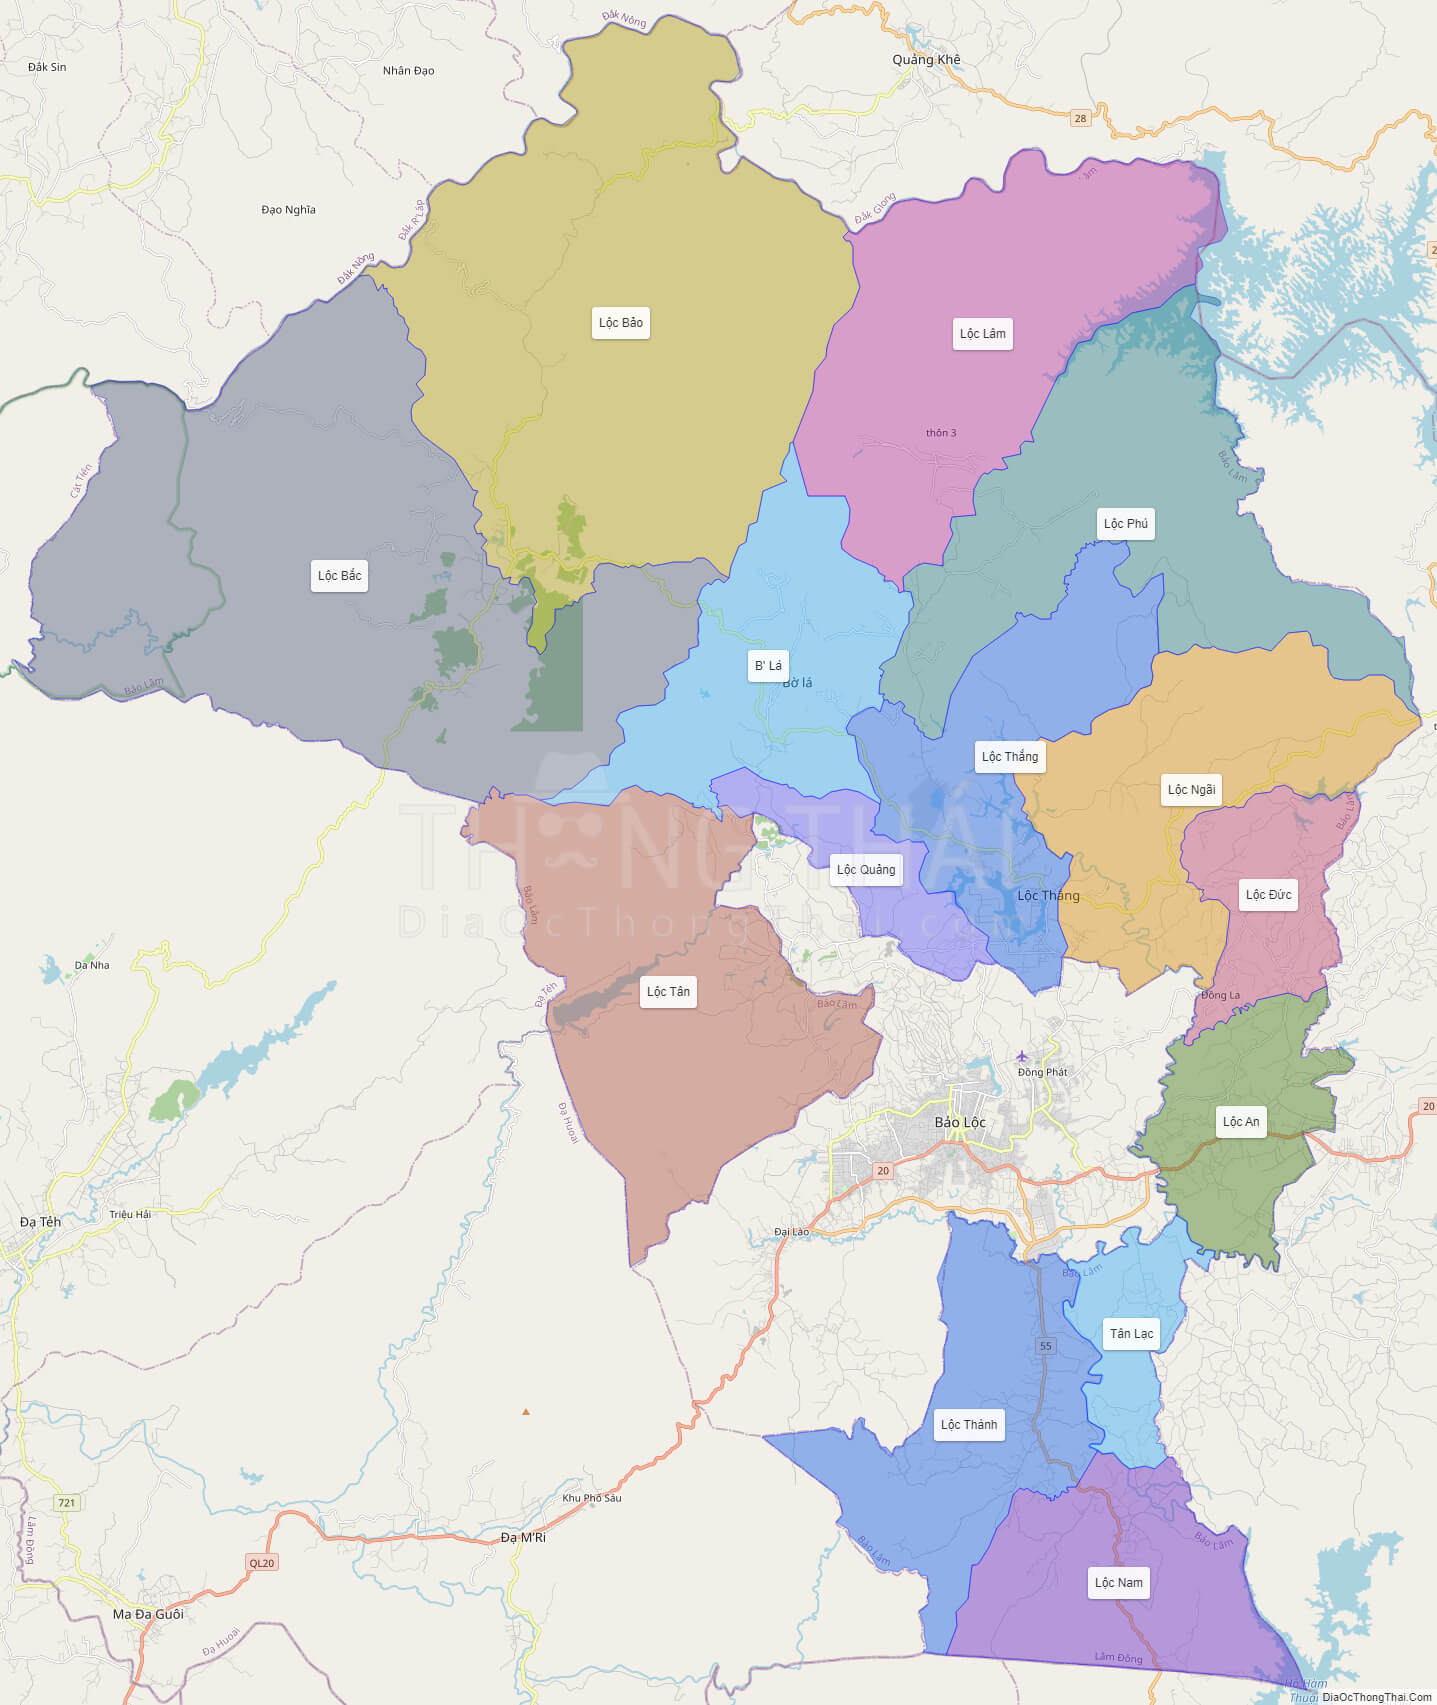 Chiêm ngưỡng bản đồ Lâm Đồng và tìm hiểu quy hoạch sử dụng đất của tỉnh này năm